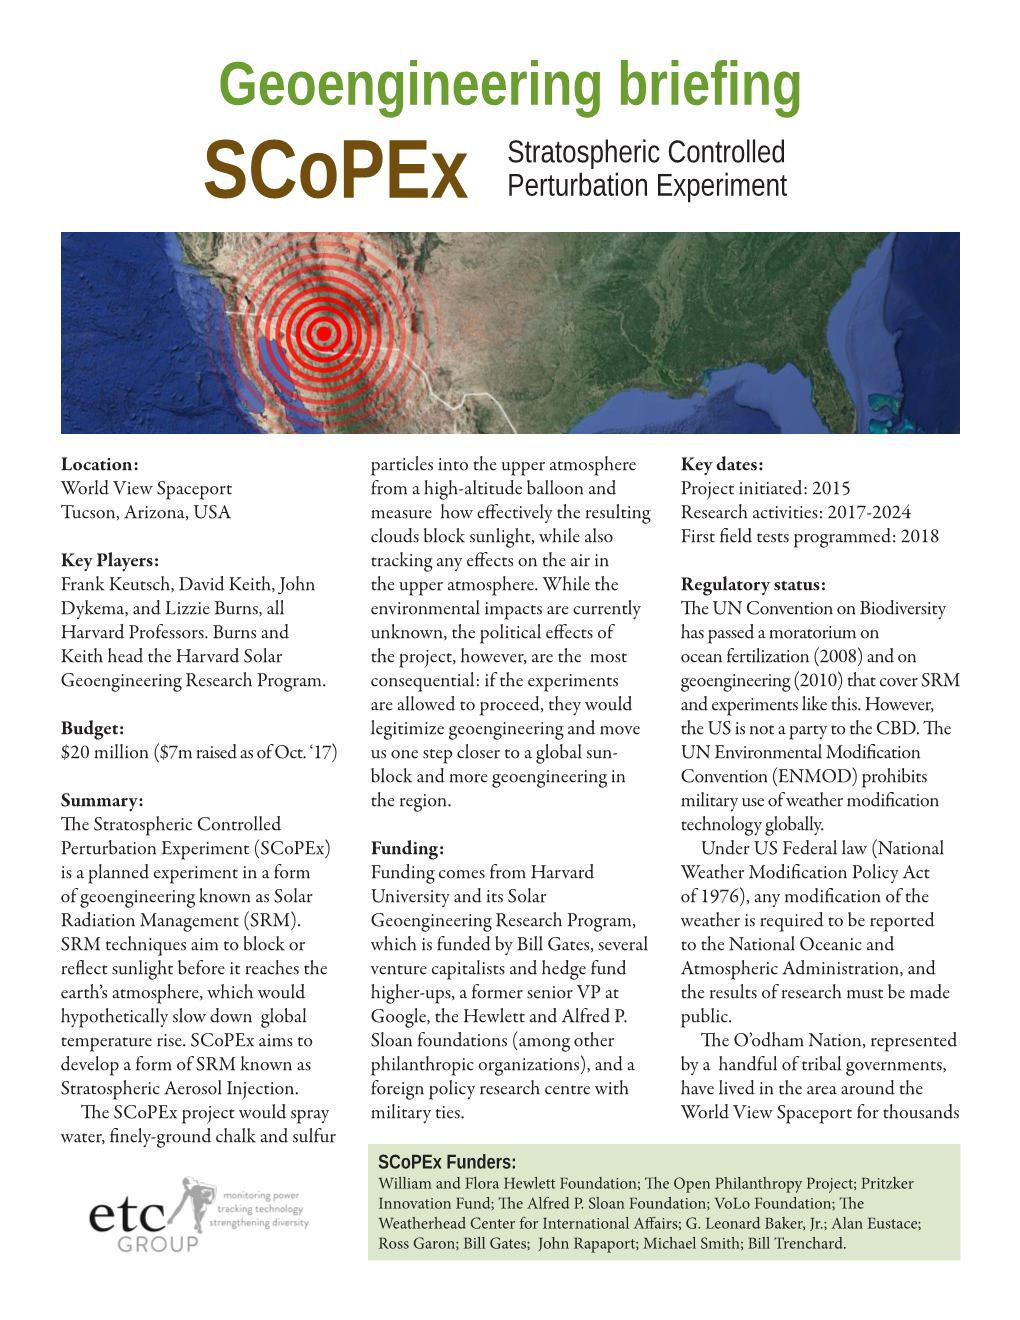 Geoengineering Briefing Stratospheric Controlled Scopex Perturbation Experiment